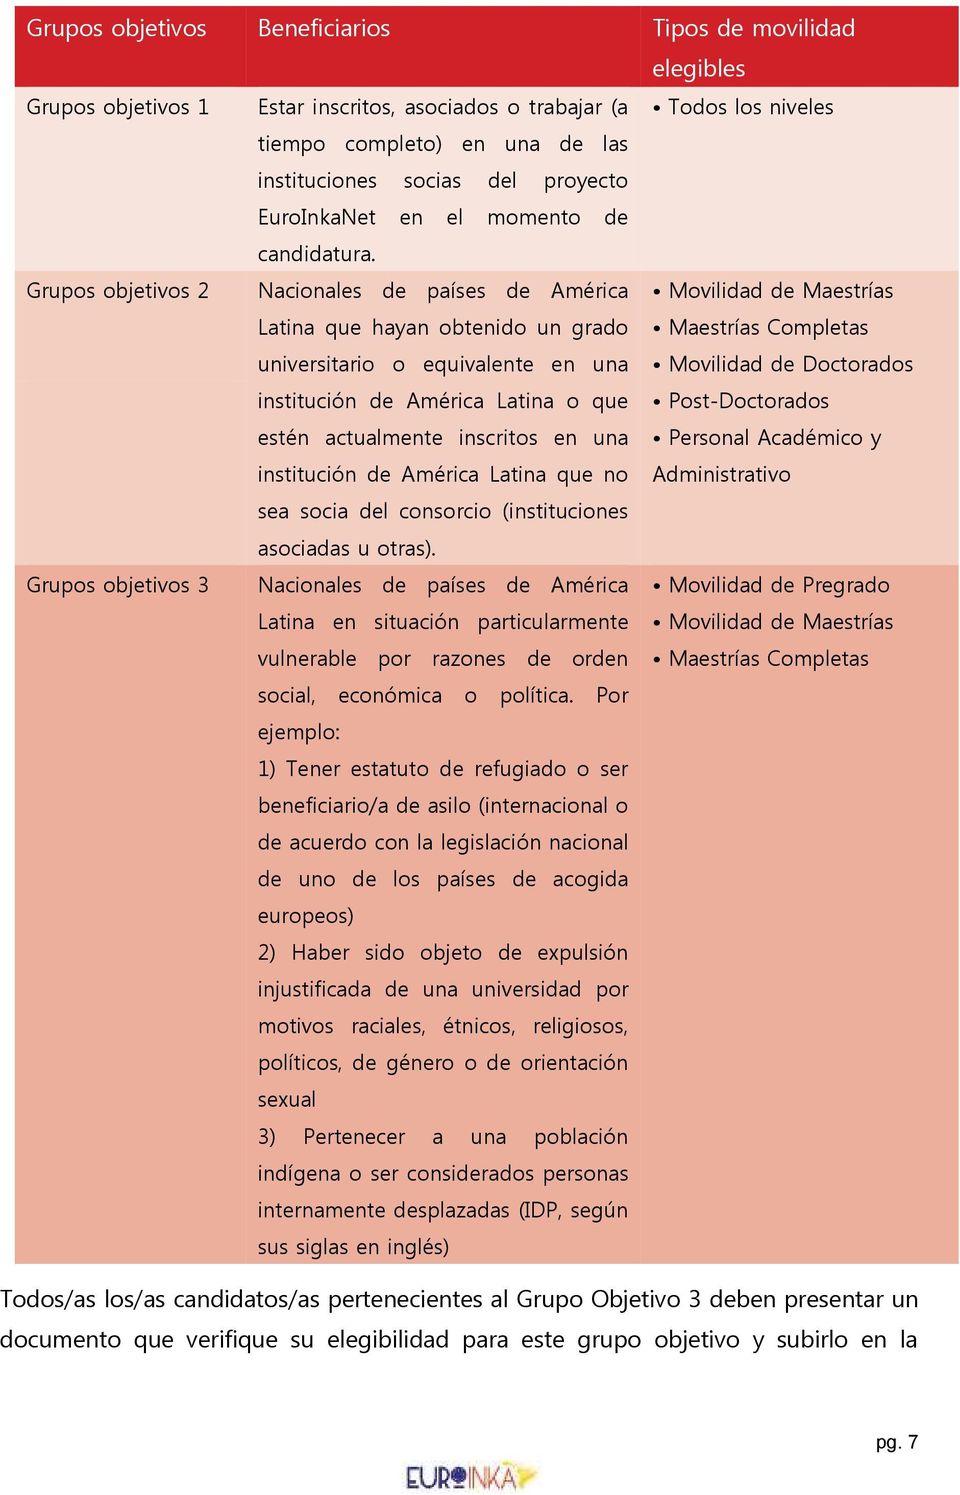 Grupos objetivos 2 Nacionales de países de América Latina que hayan obtenido un grado universitario o equivalente en una institución de América Latina o que estén actualmente inscritos en una